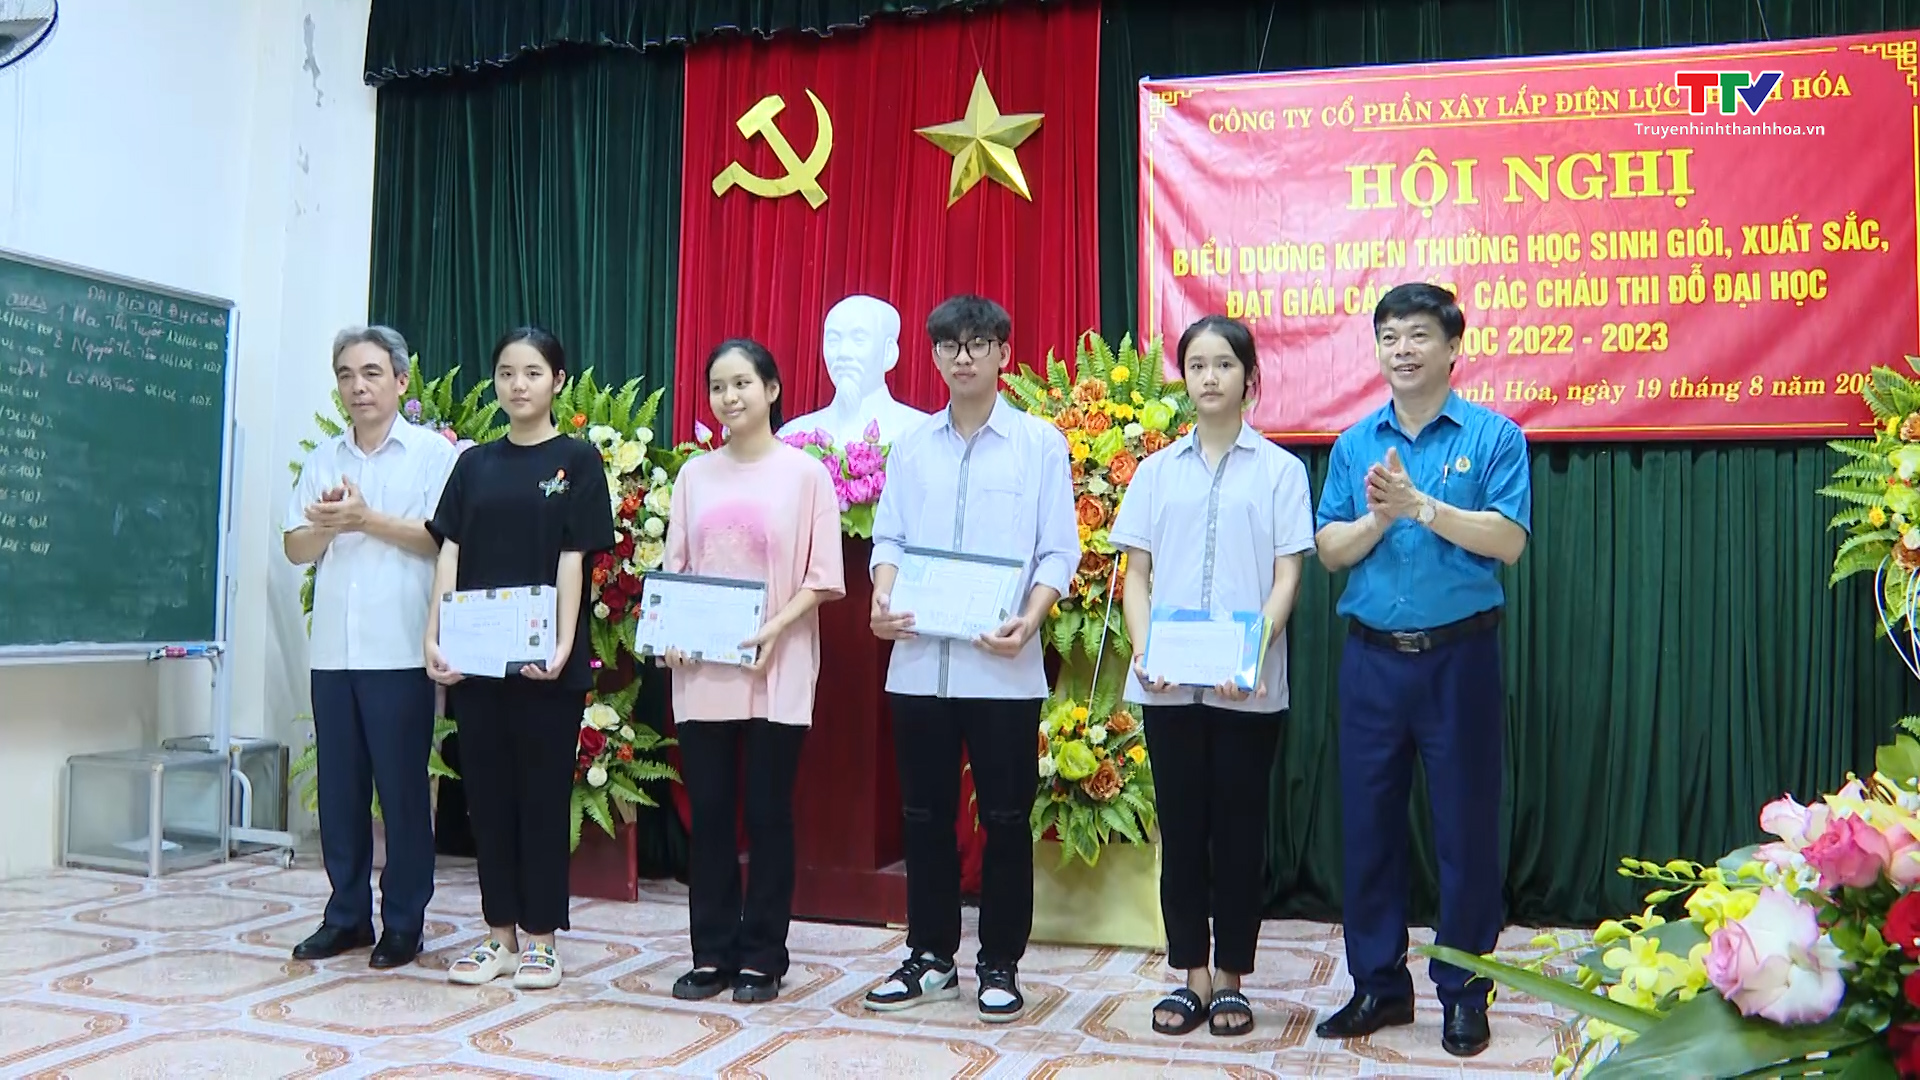 Công ty cổ phần Xây lắp điện lực Thanh Hoá khen thưởng cho học sinh giỏi - Ảnh 2.